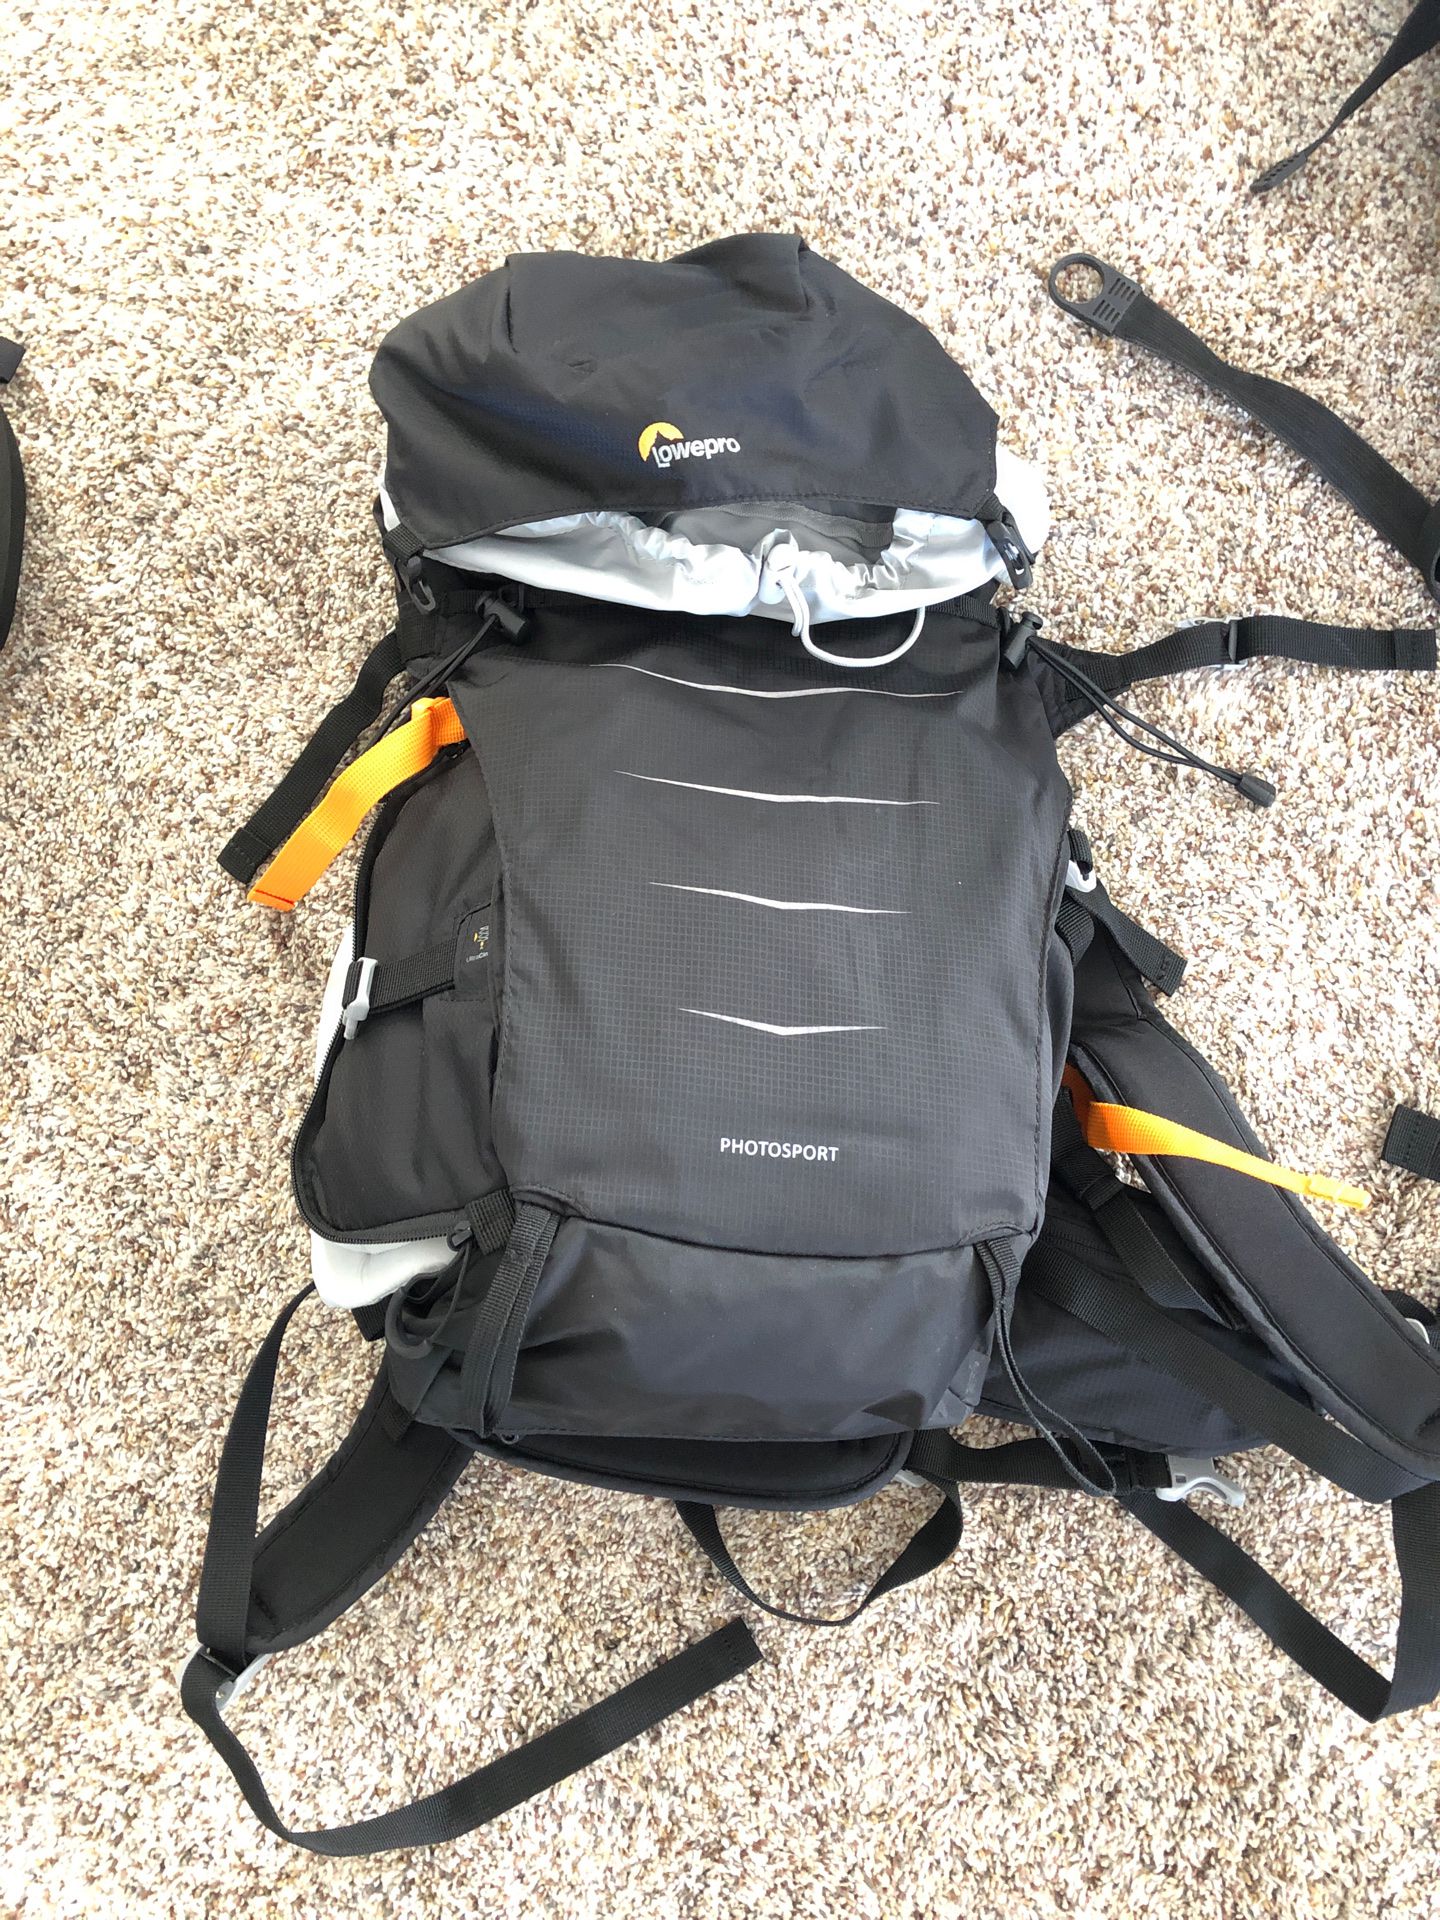 Lowepro photosport backpack